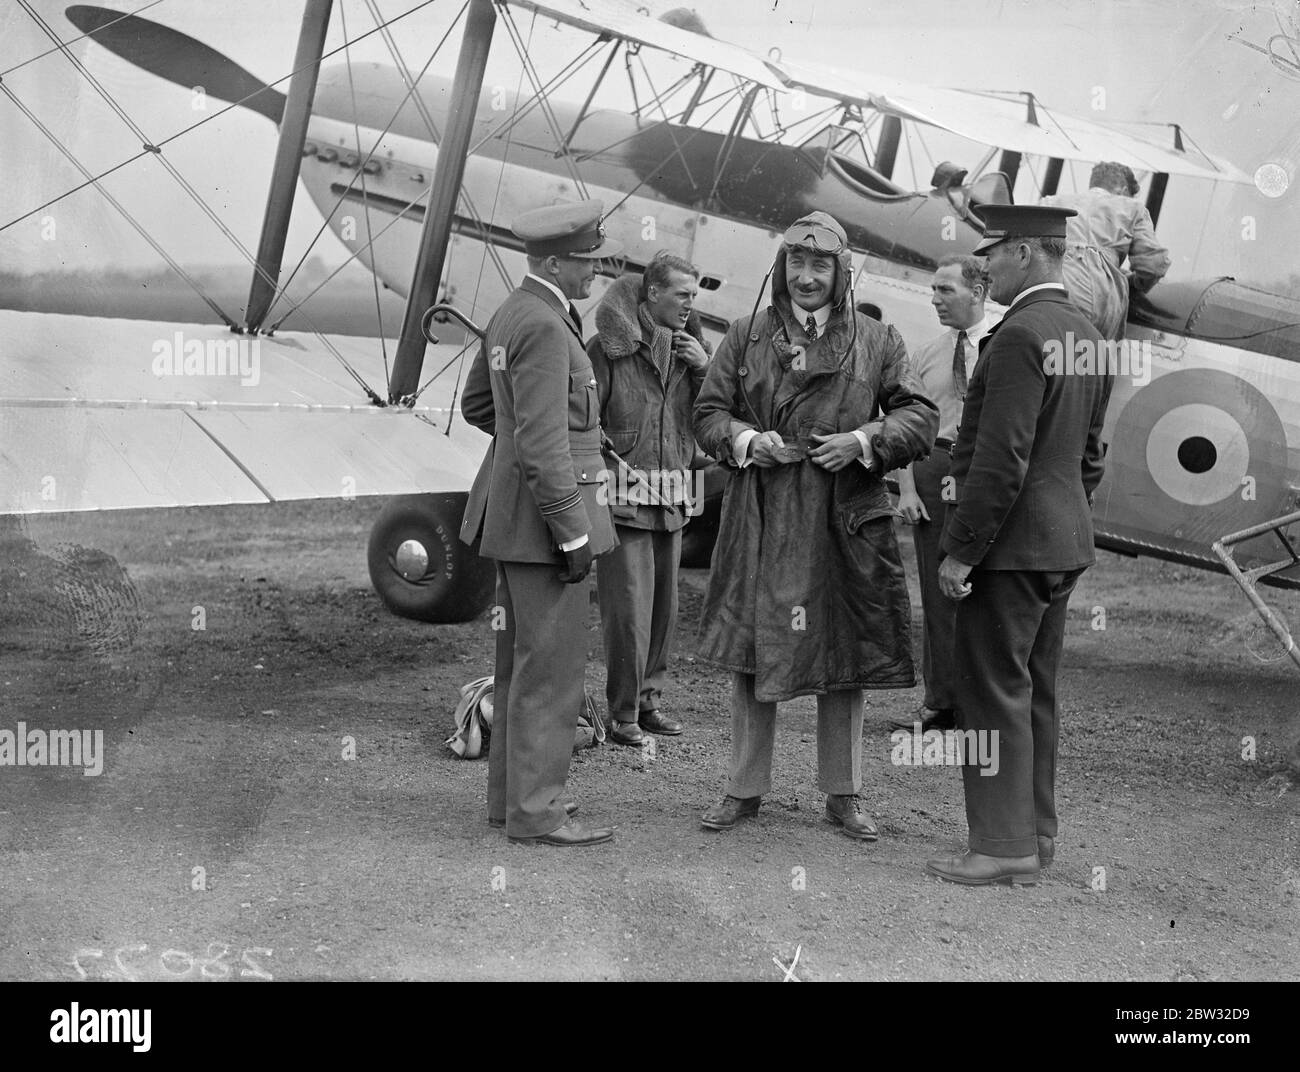 Sir Geoffrey Salmond arrive à l'aérodrome de Northolt depuis Wiltshire . Sir Geoffrey Salmond , qui succédera à son frère comme chef de la Royal Air Force , est arrivé à l'aérodrome de Northolt , Londres , après une visite dans le Wiltshire . Sir Geoffrey Salmond , à votre arrivée à l'aérodrome de Northolt , Londres . 26 août 1932 Banque D'Images